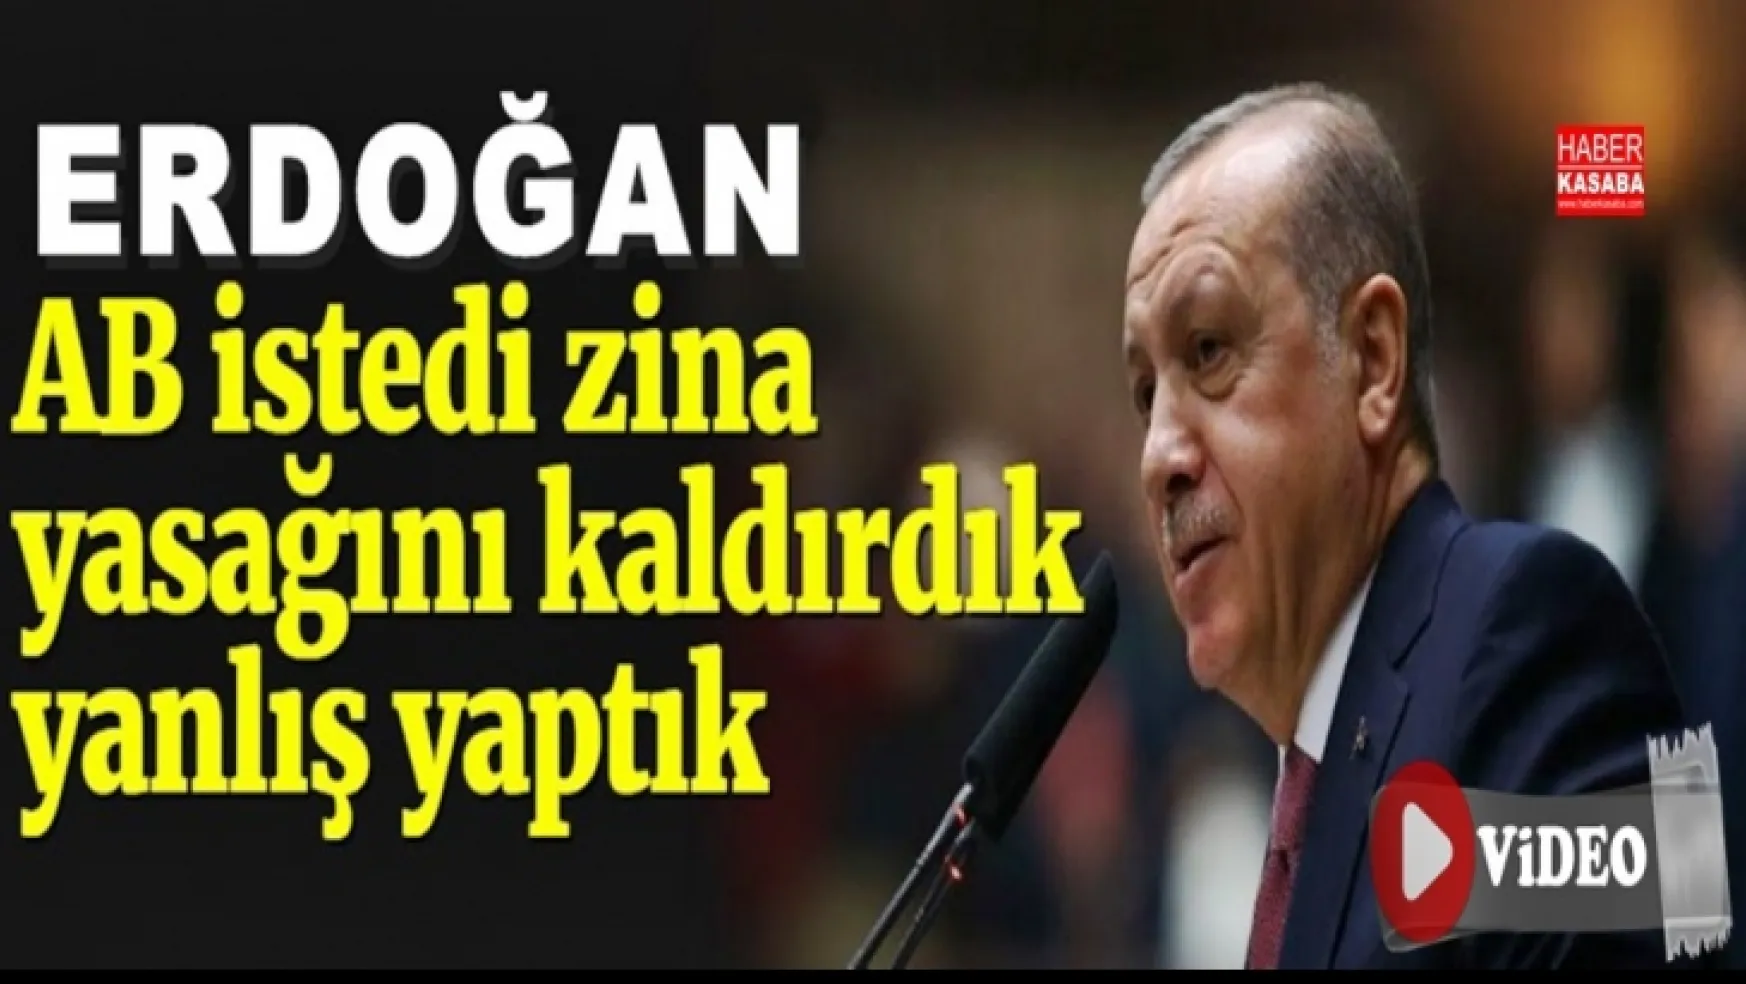 Erdoğan'dan tarihi bir itiraf, 'Zina yasağını kaldırdık, yanlış yaptık!